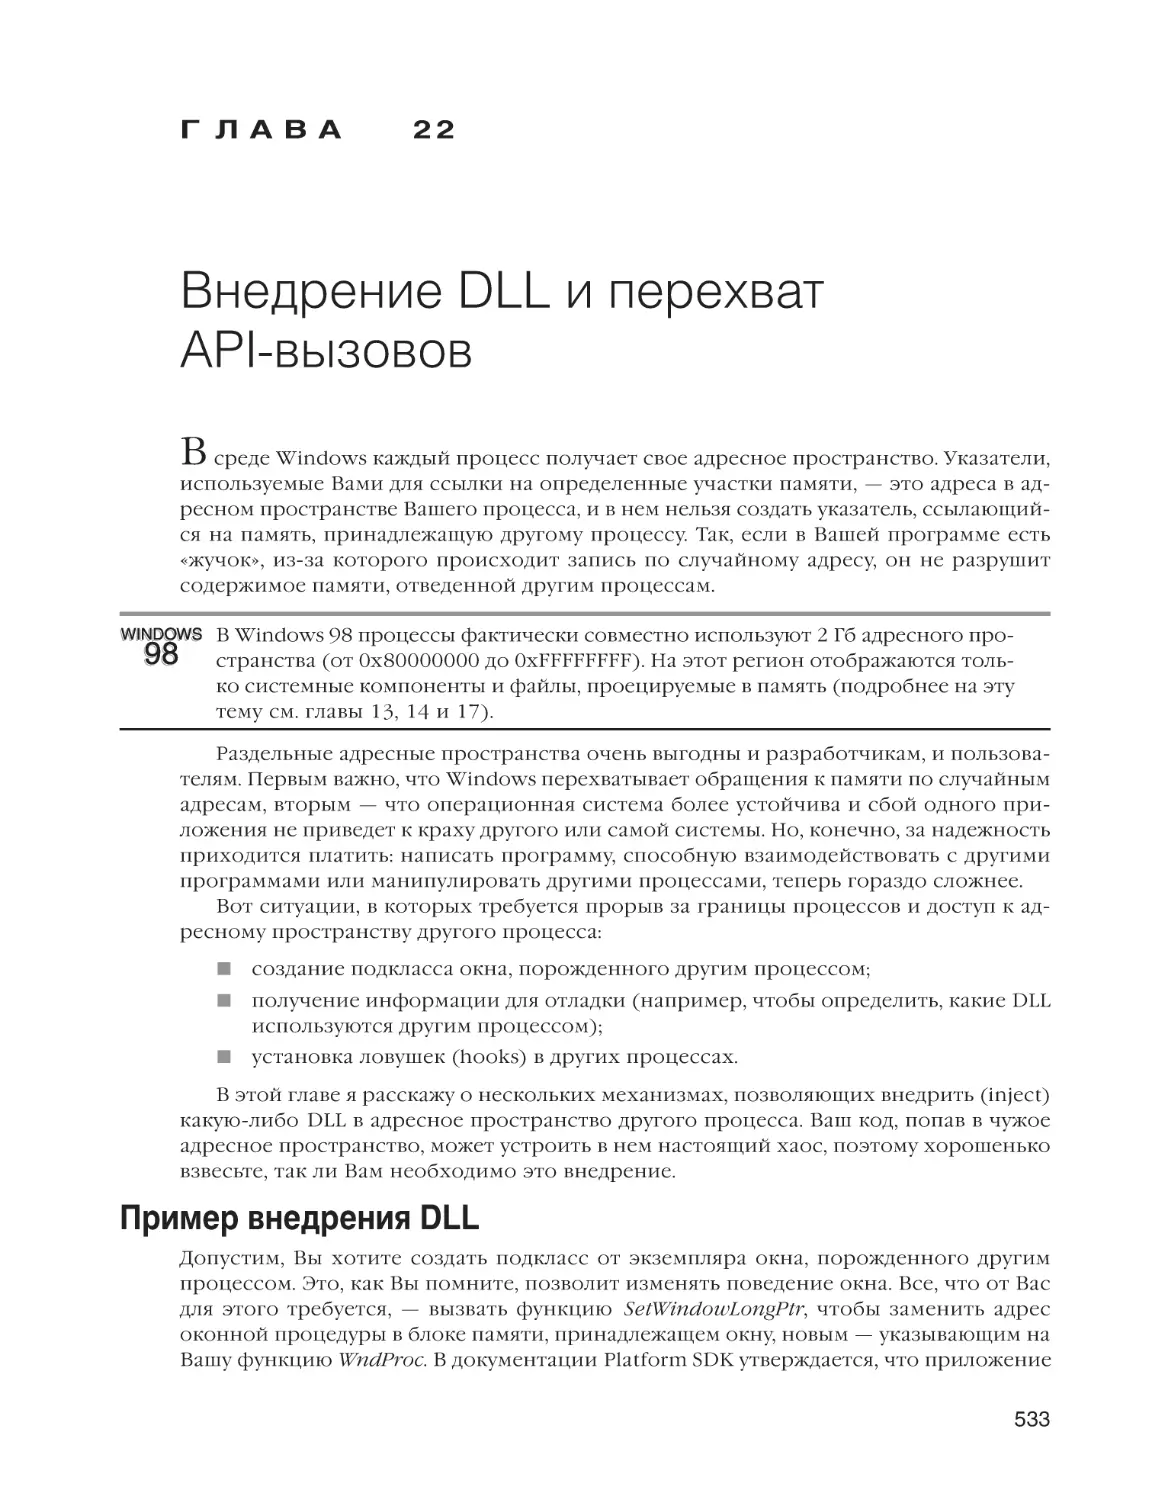 Глава 22. Внедрение DLL и перехват API-вызовов
Пример внедрения DLL